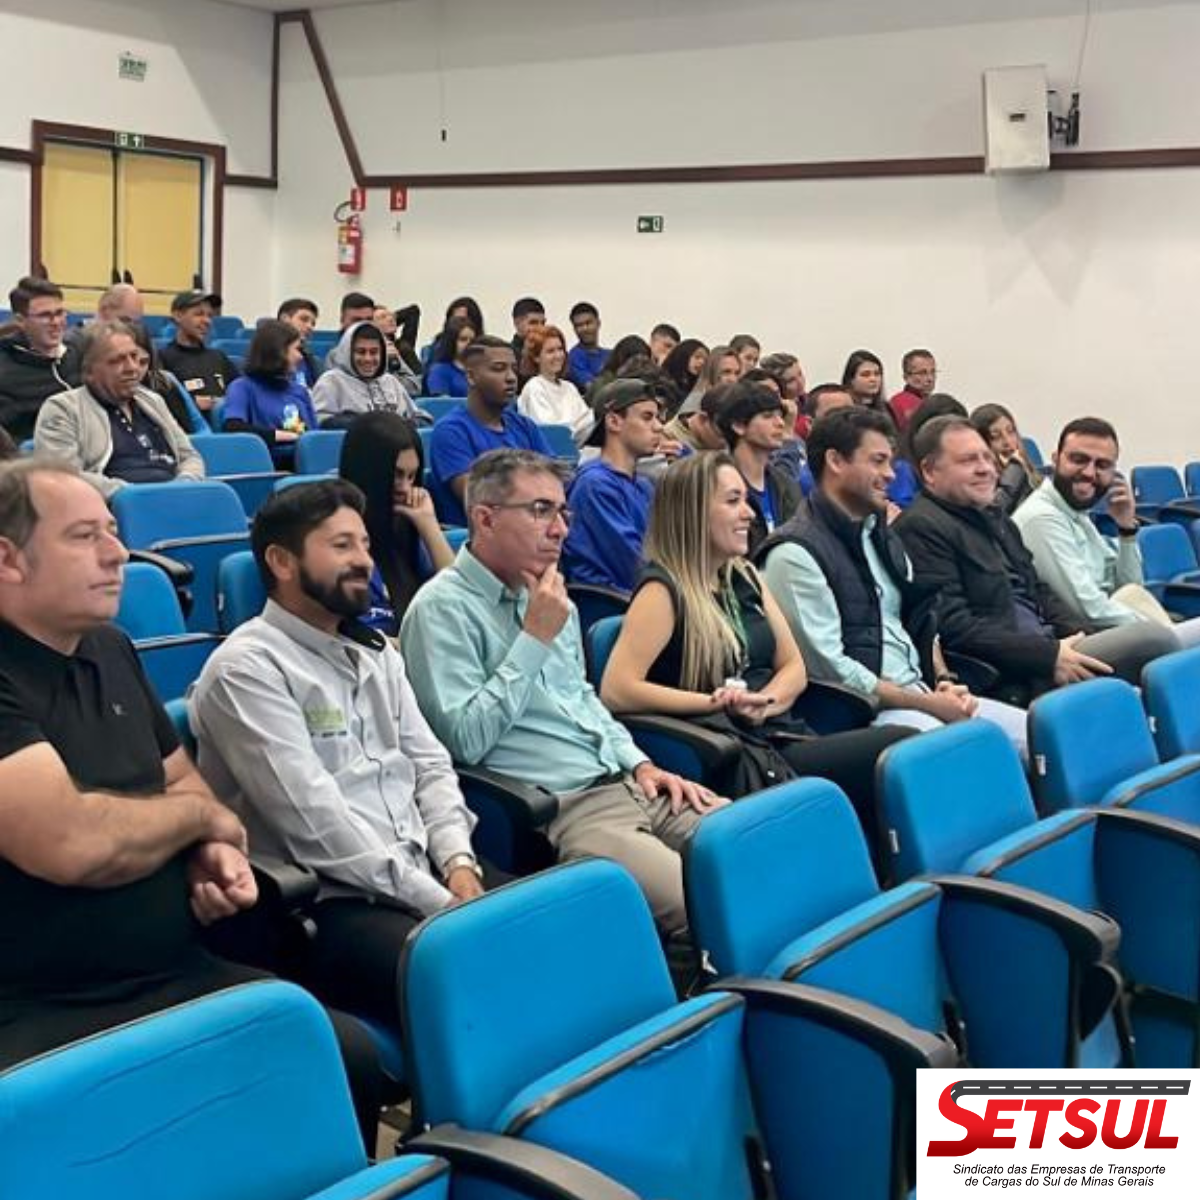 Sest Senat realizou ação de sustentabilidade em todo o país – SETSUL